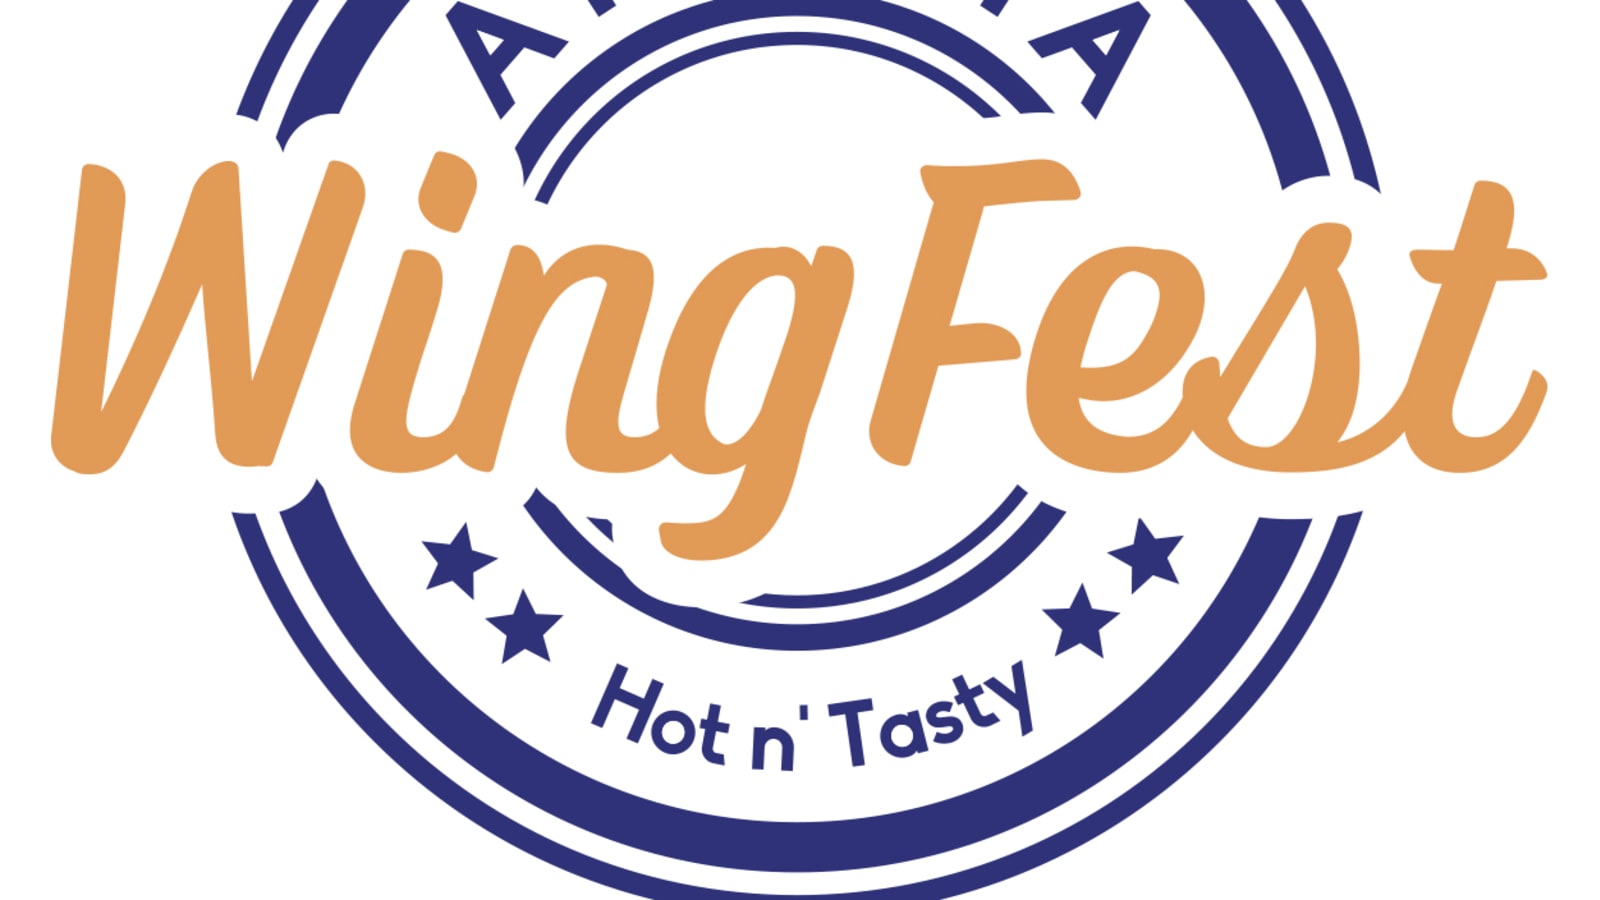 Atlanta Wing Fest, Presented by Taste of Atlanta